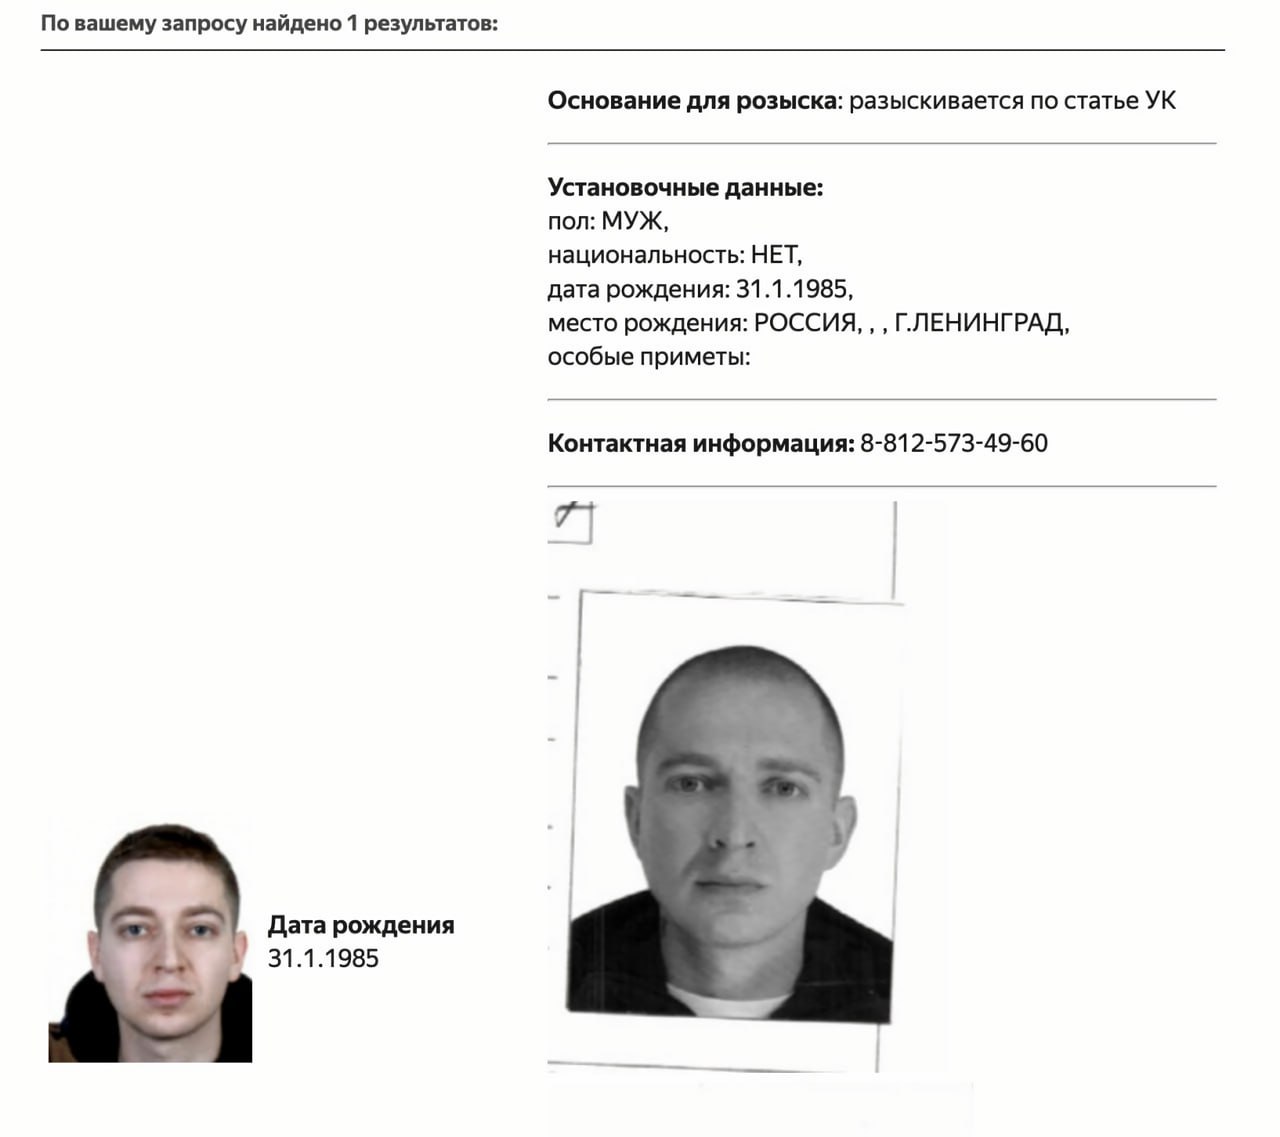 Иноагента Oxxxymiron объявили в розыск в РФ.